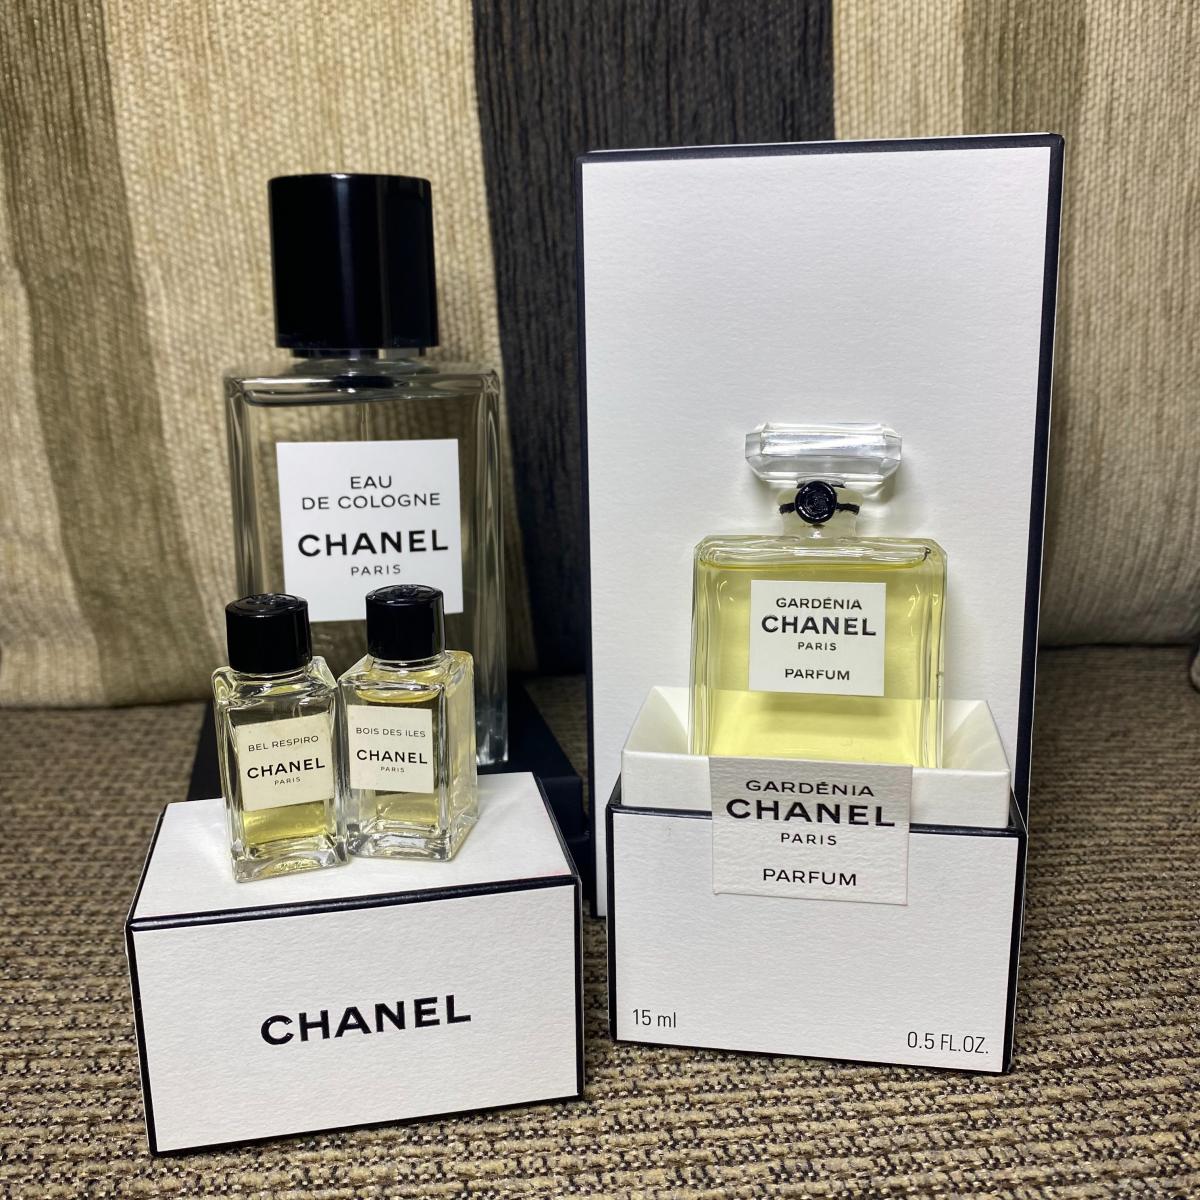 Les Exclusifs de Chanel Eau de Cologne Chanel perfume - a fragrance for